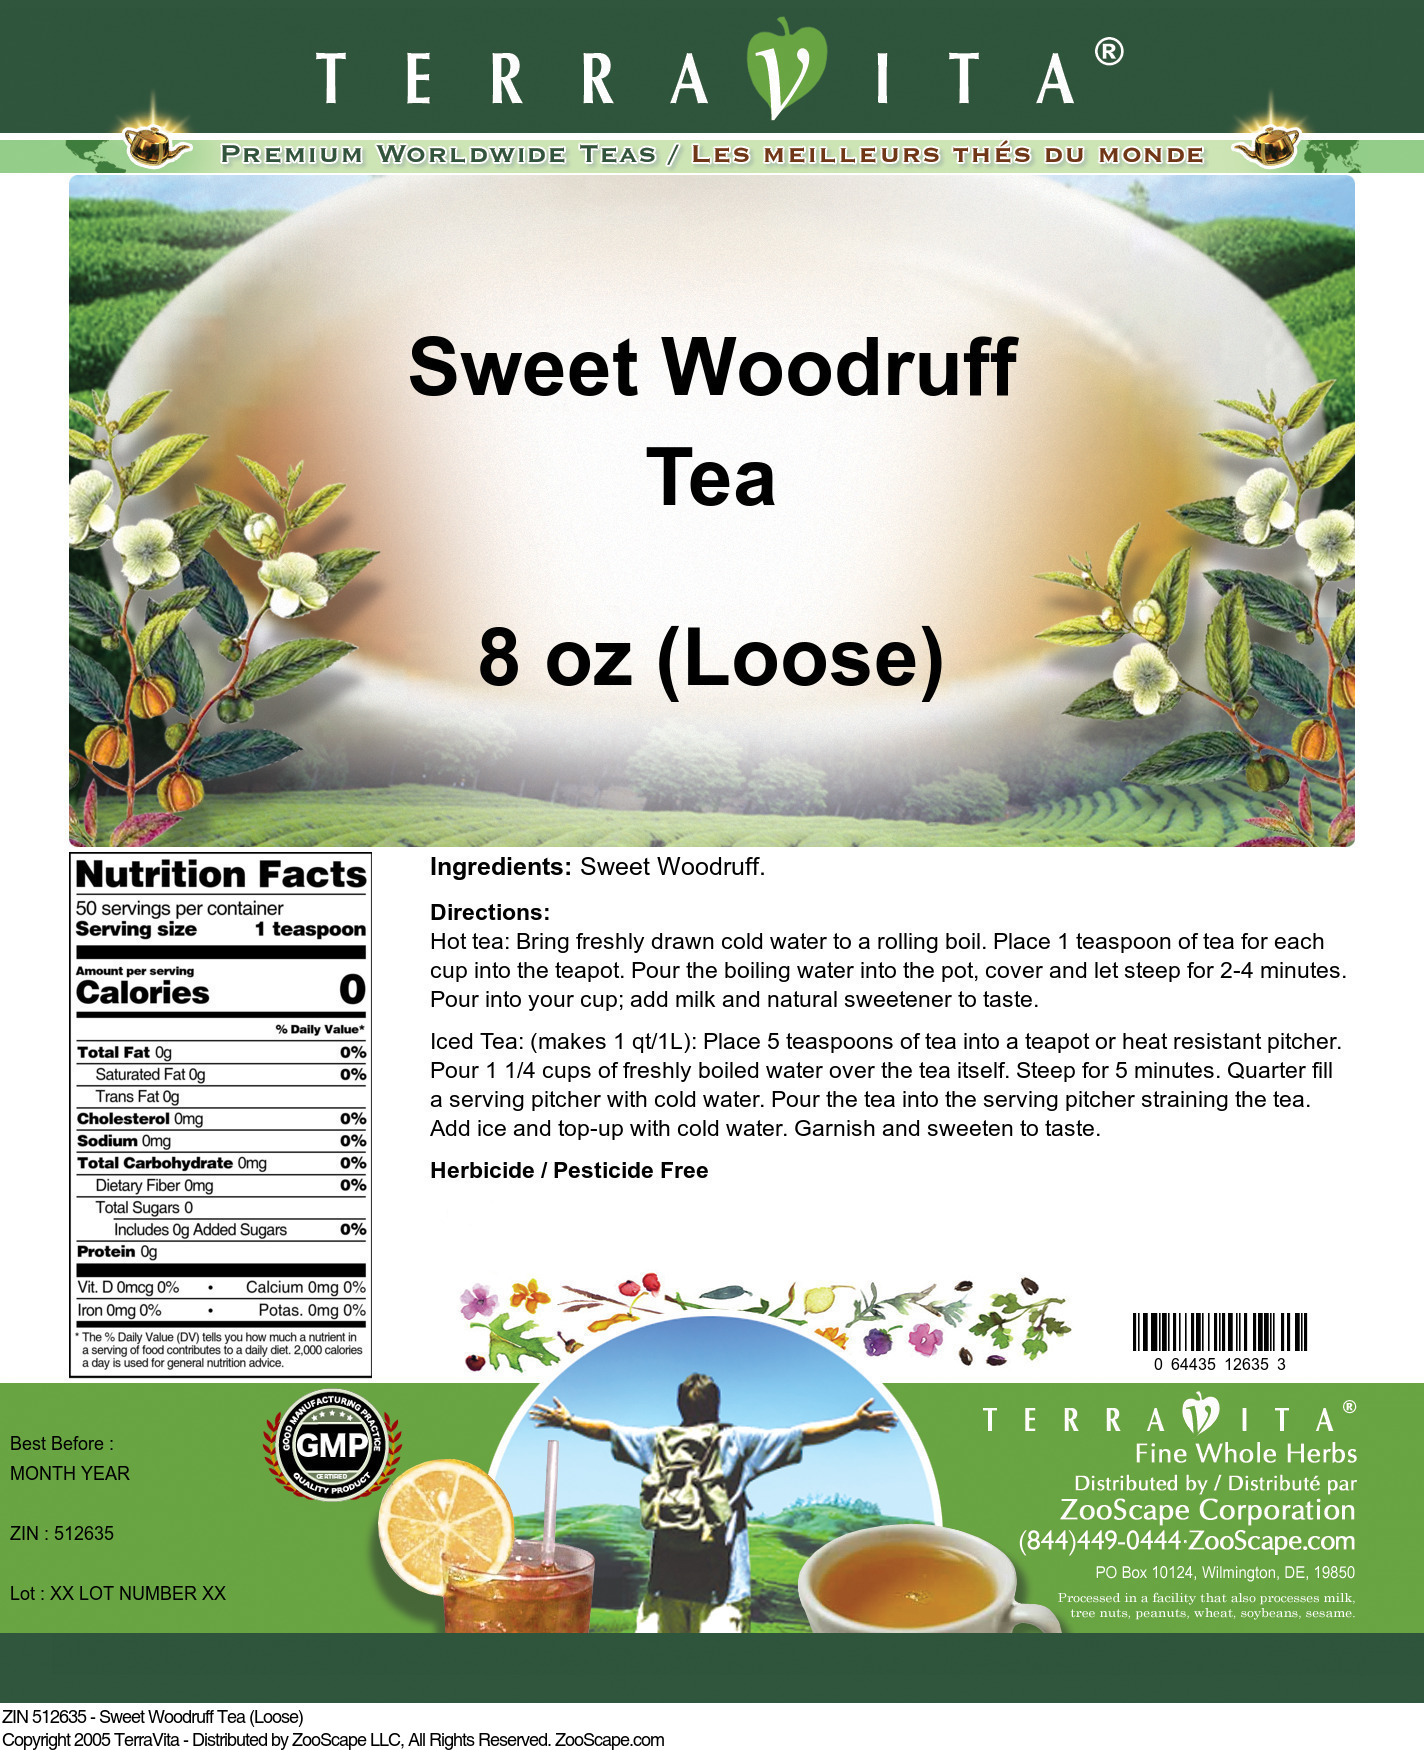 Sweet Woodruff Tea (Loose) - Label